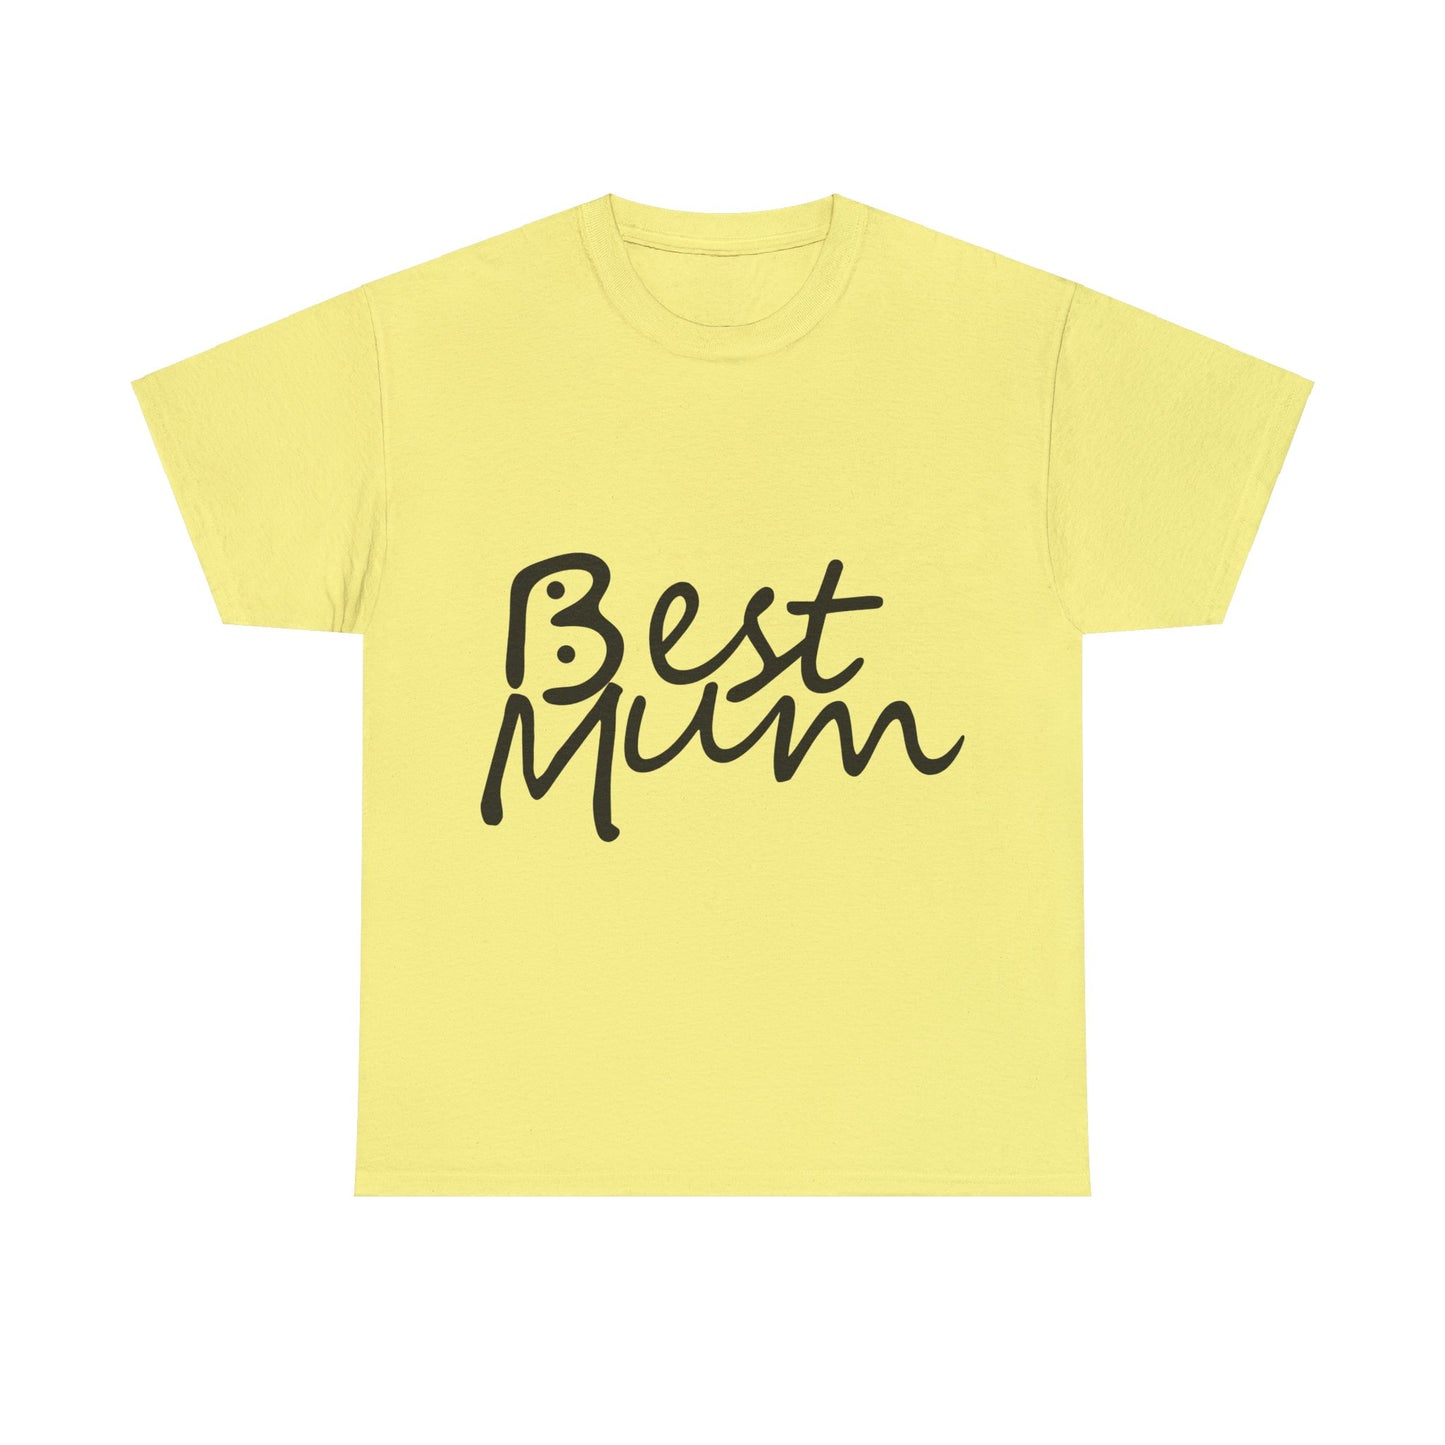 Best Mum, Bogan's Design